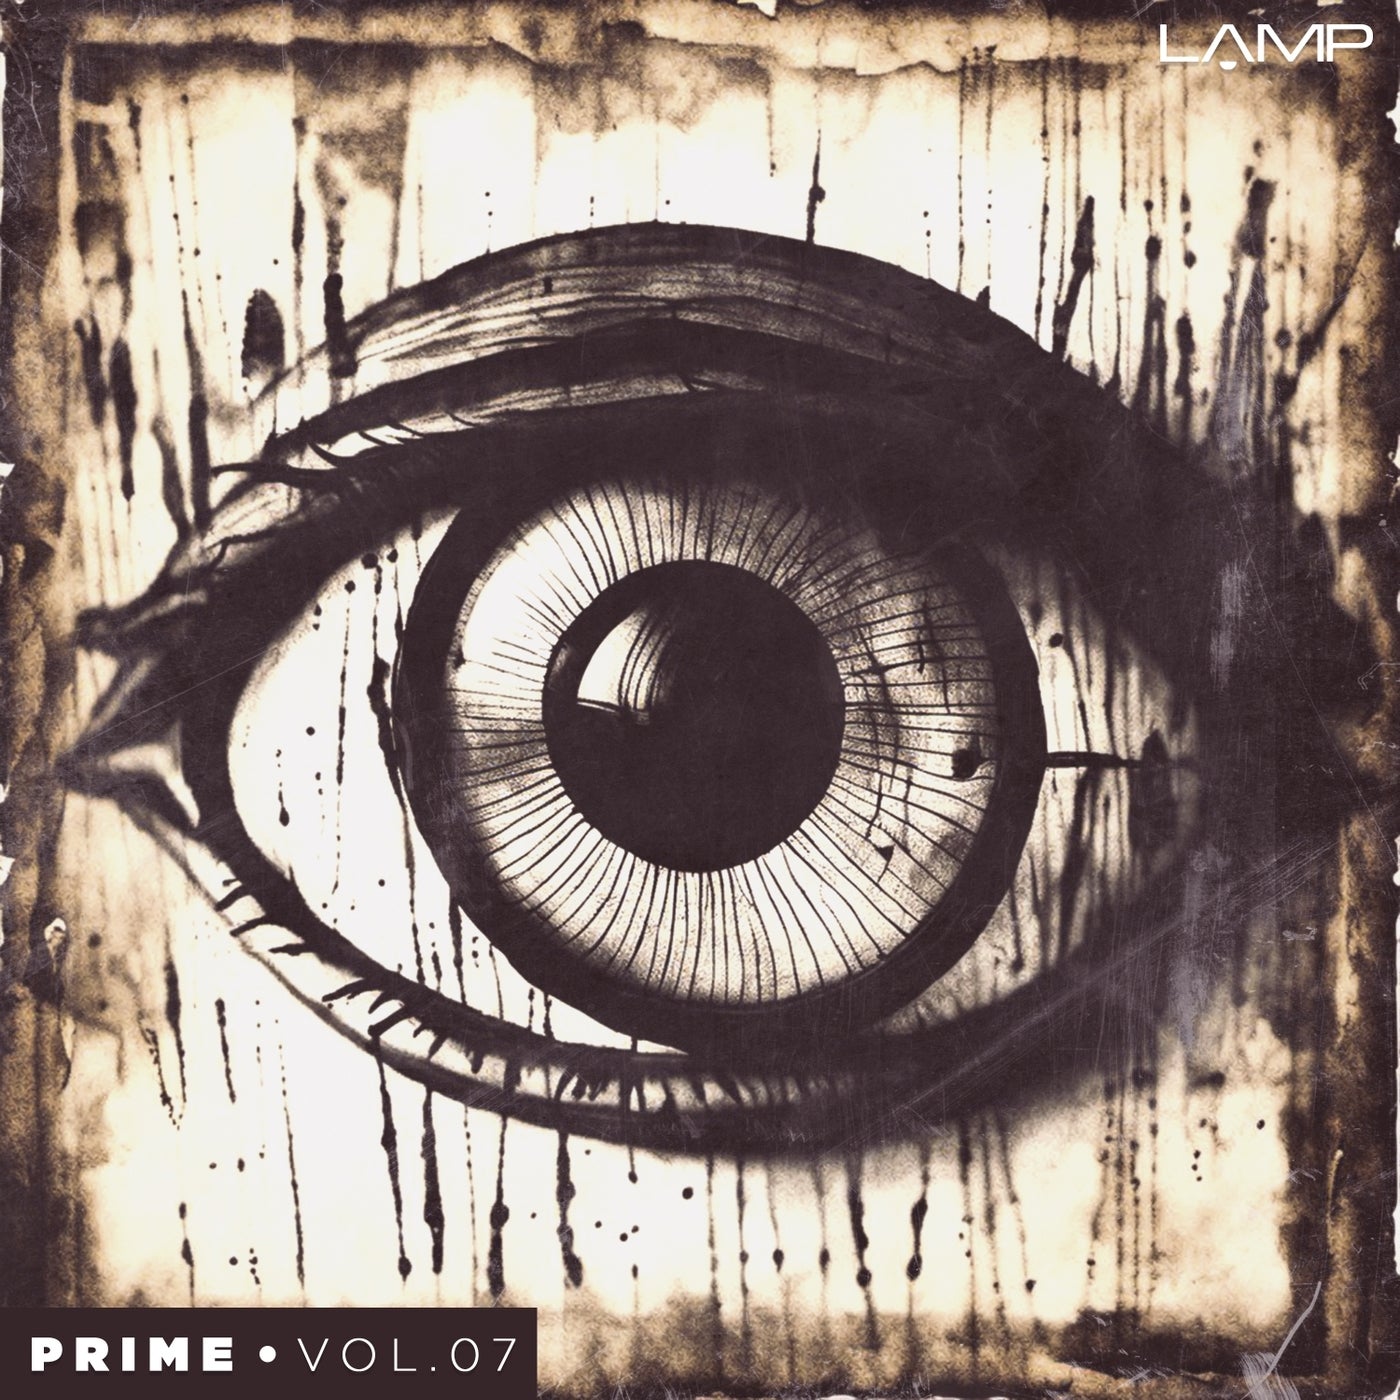 Prime, Vol. 07